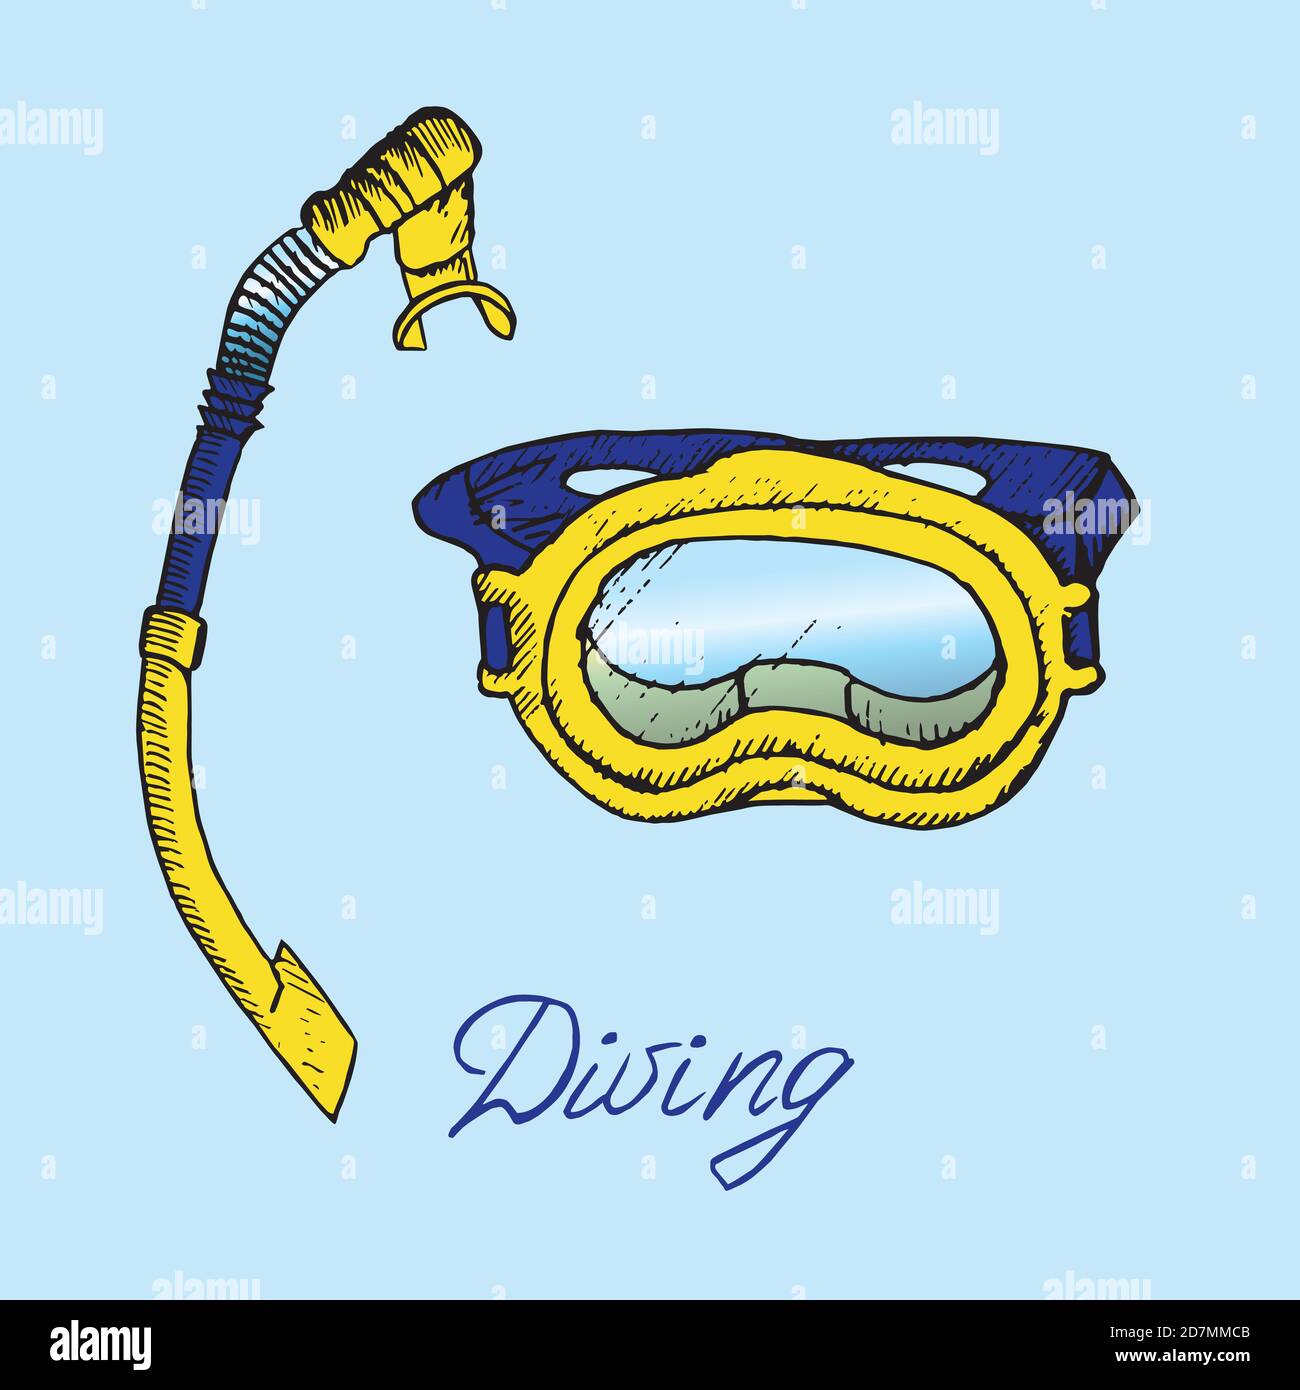 Maschera subacquea blu e gialla e snorkeling, schizzo di doodle disegnato a mano con iscrizione, illustrazione a colori isolata Foto Stock